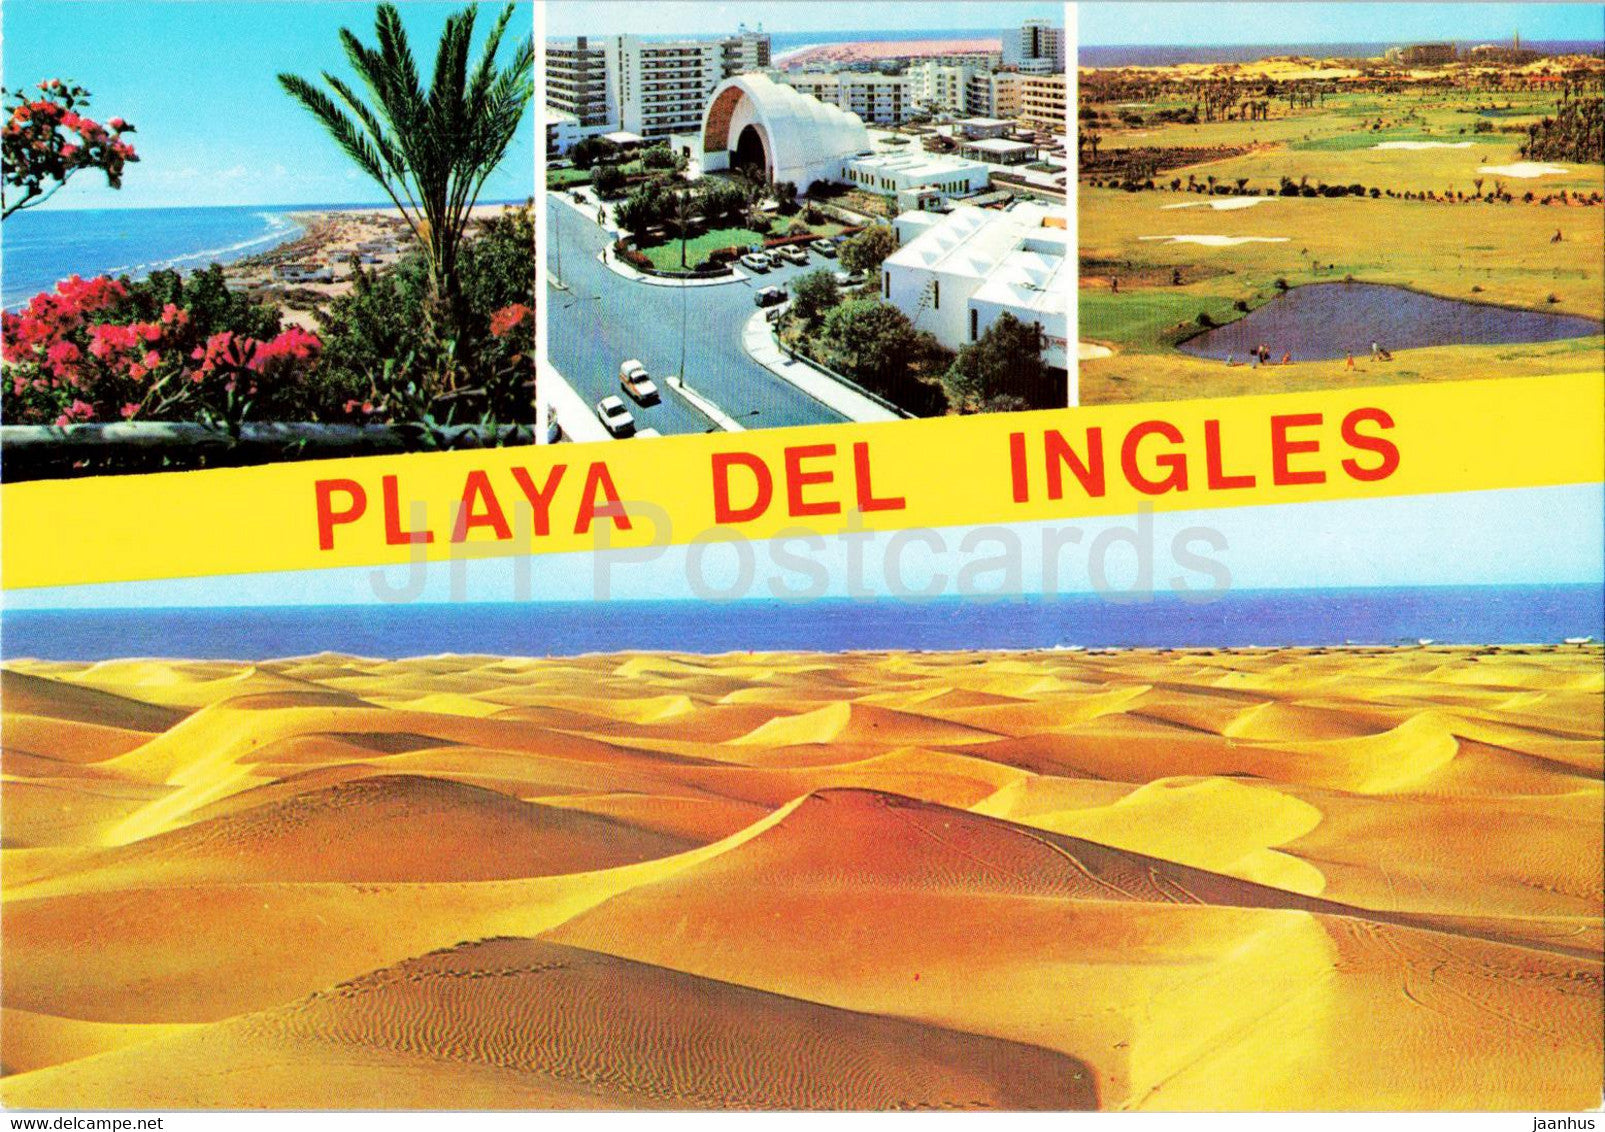 Gran Canaria - Playa del Ingles - dunes - multiview - Spain - unused - JH Postcards